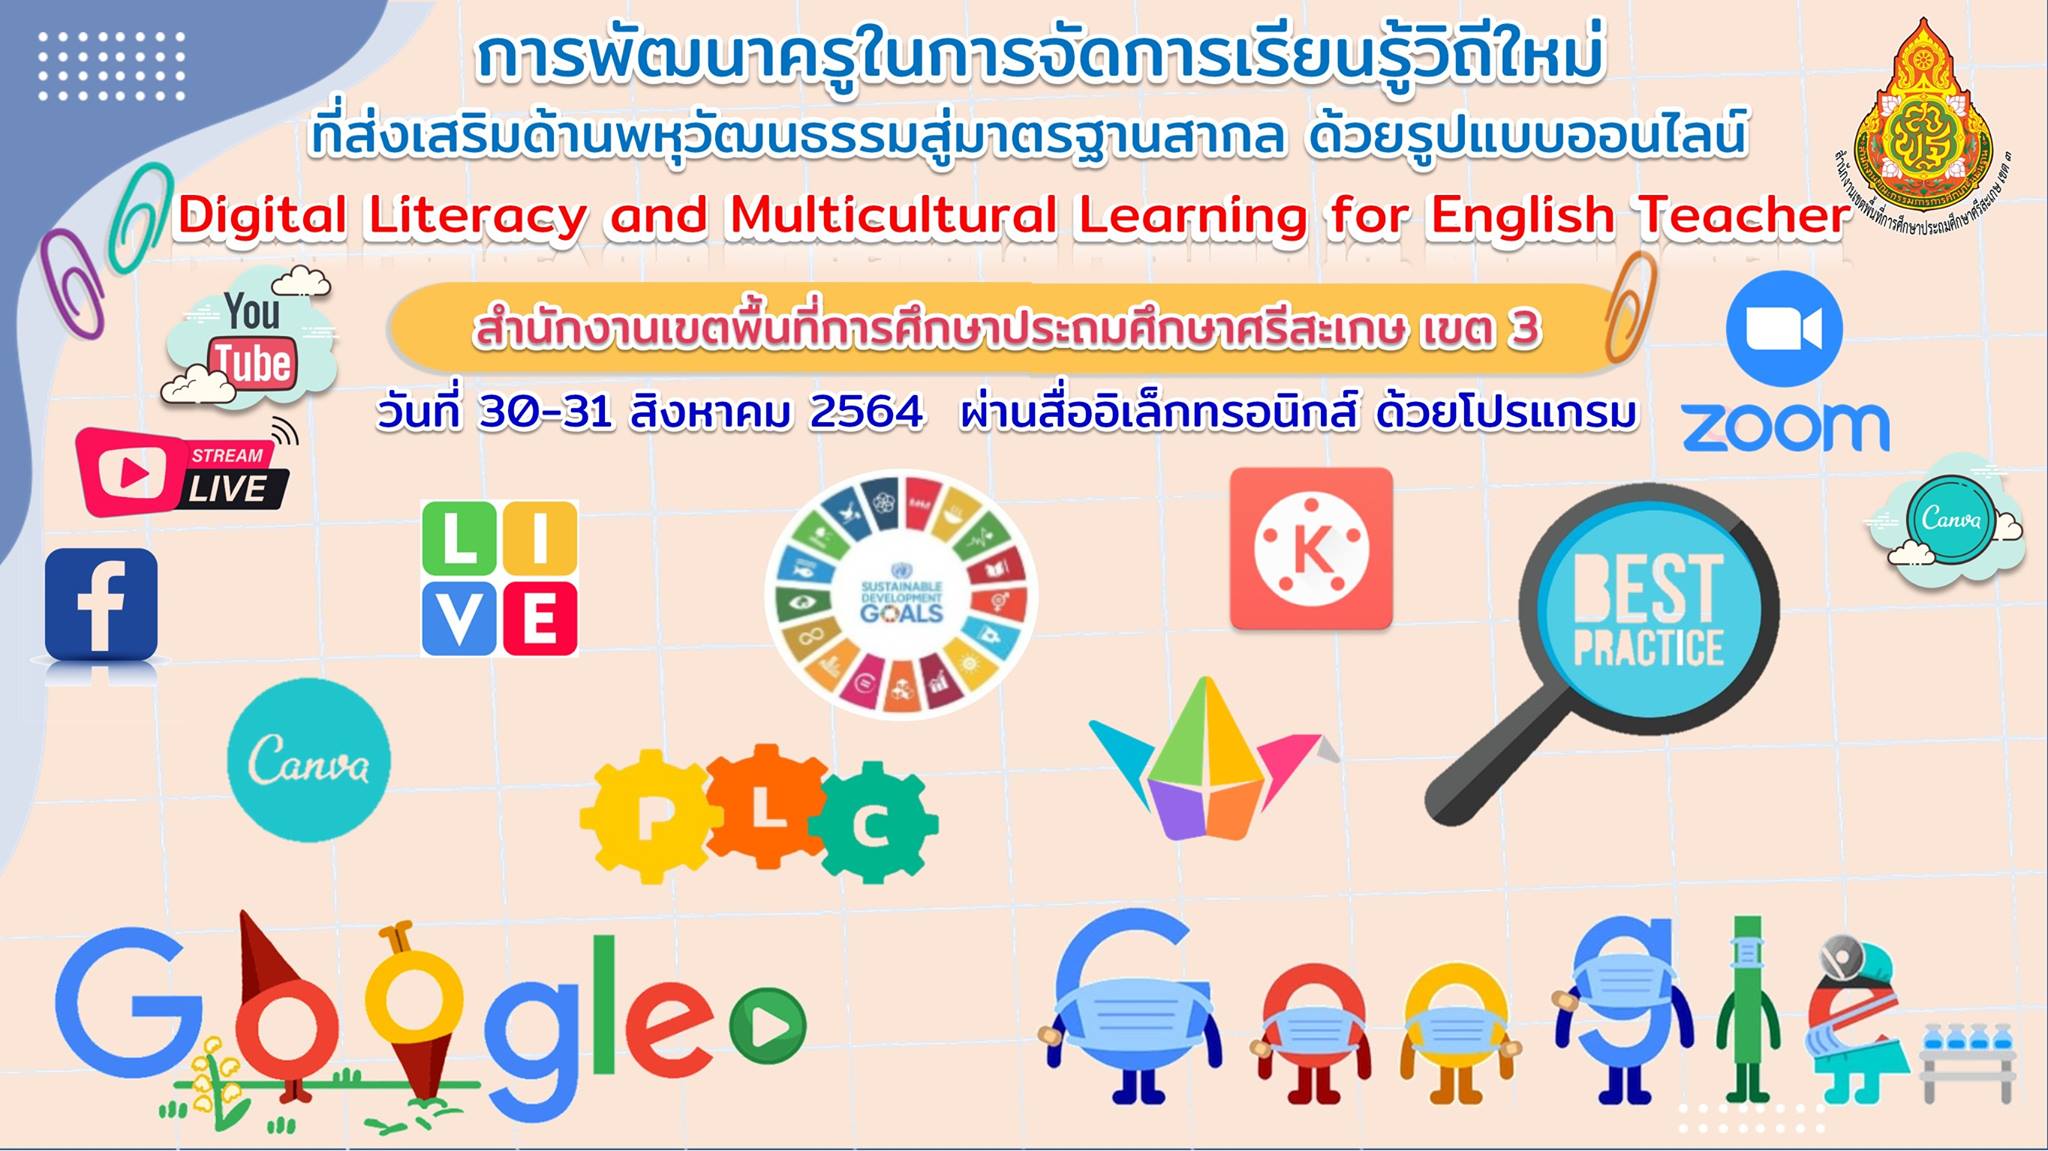 อบรมออนไลน์ การพัฒนาทักษะด้านดิจิทัลและการเรียนรู้เพื่อส่งเสริมพหุวัฒนธรรม สำหรับครูภาษาอังกฤษ Digital Literacy and Multicultural Learning for English Teacher วันที่ 30-31 สิงหาคม2564 จาก สพป.ศรีสะเกษ เขต 3